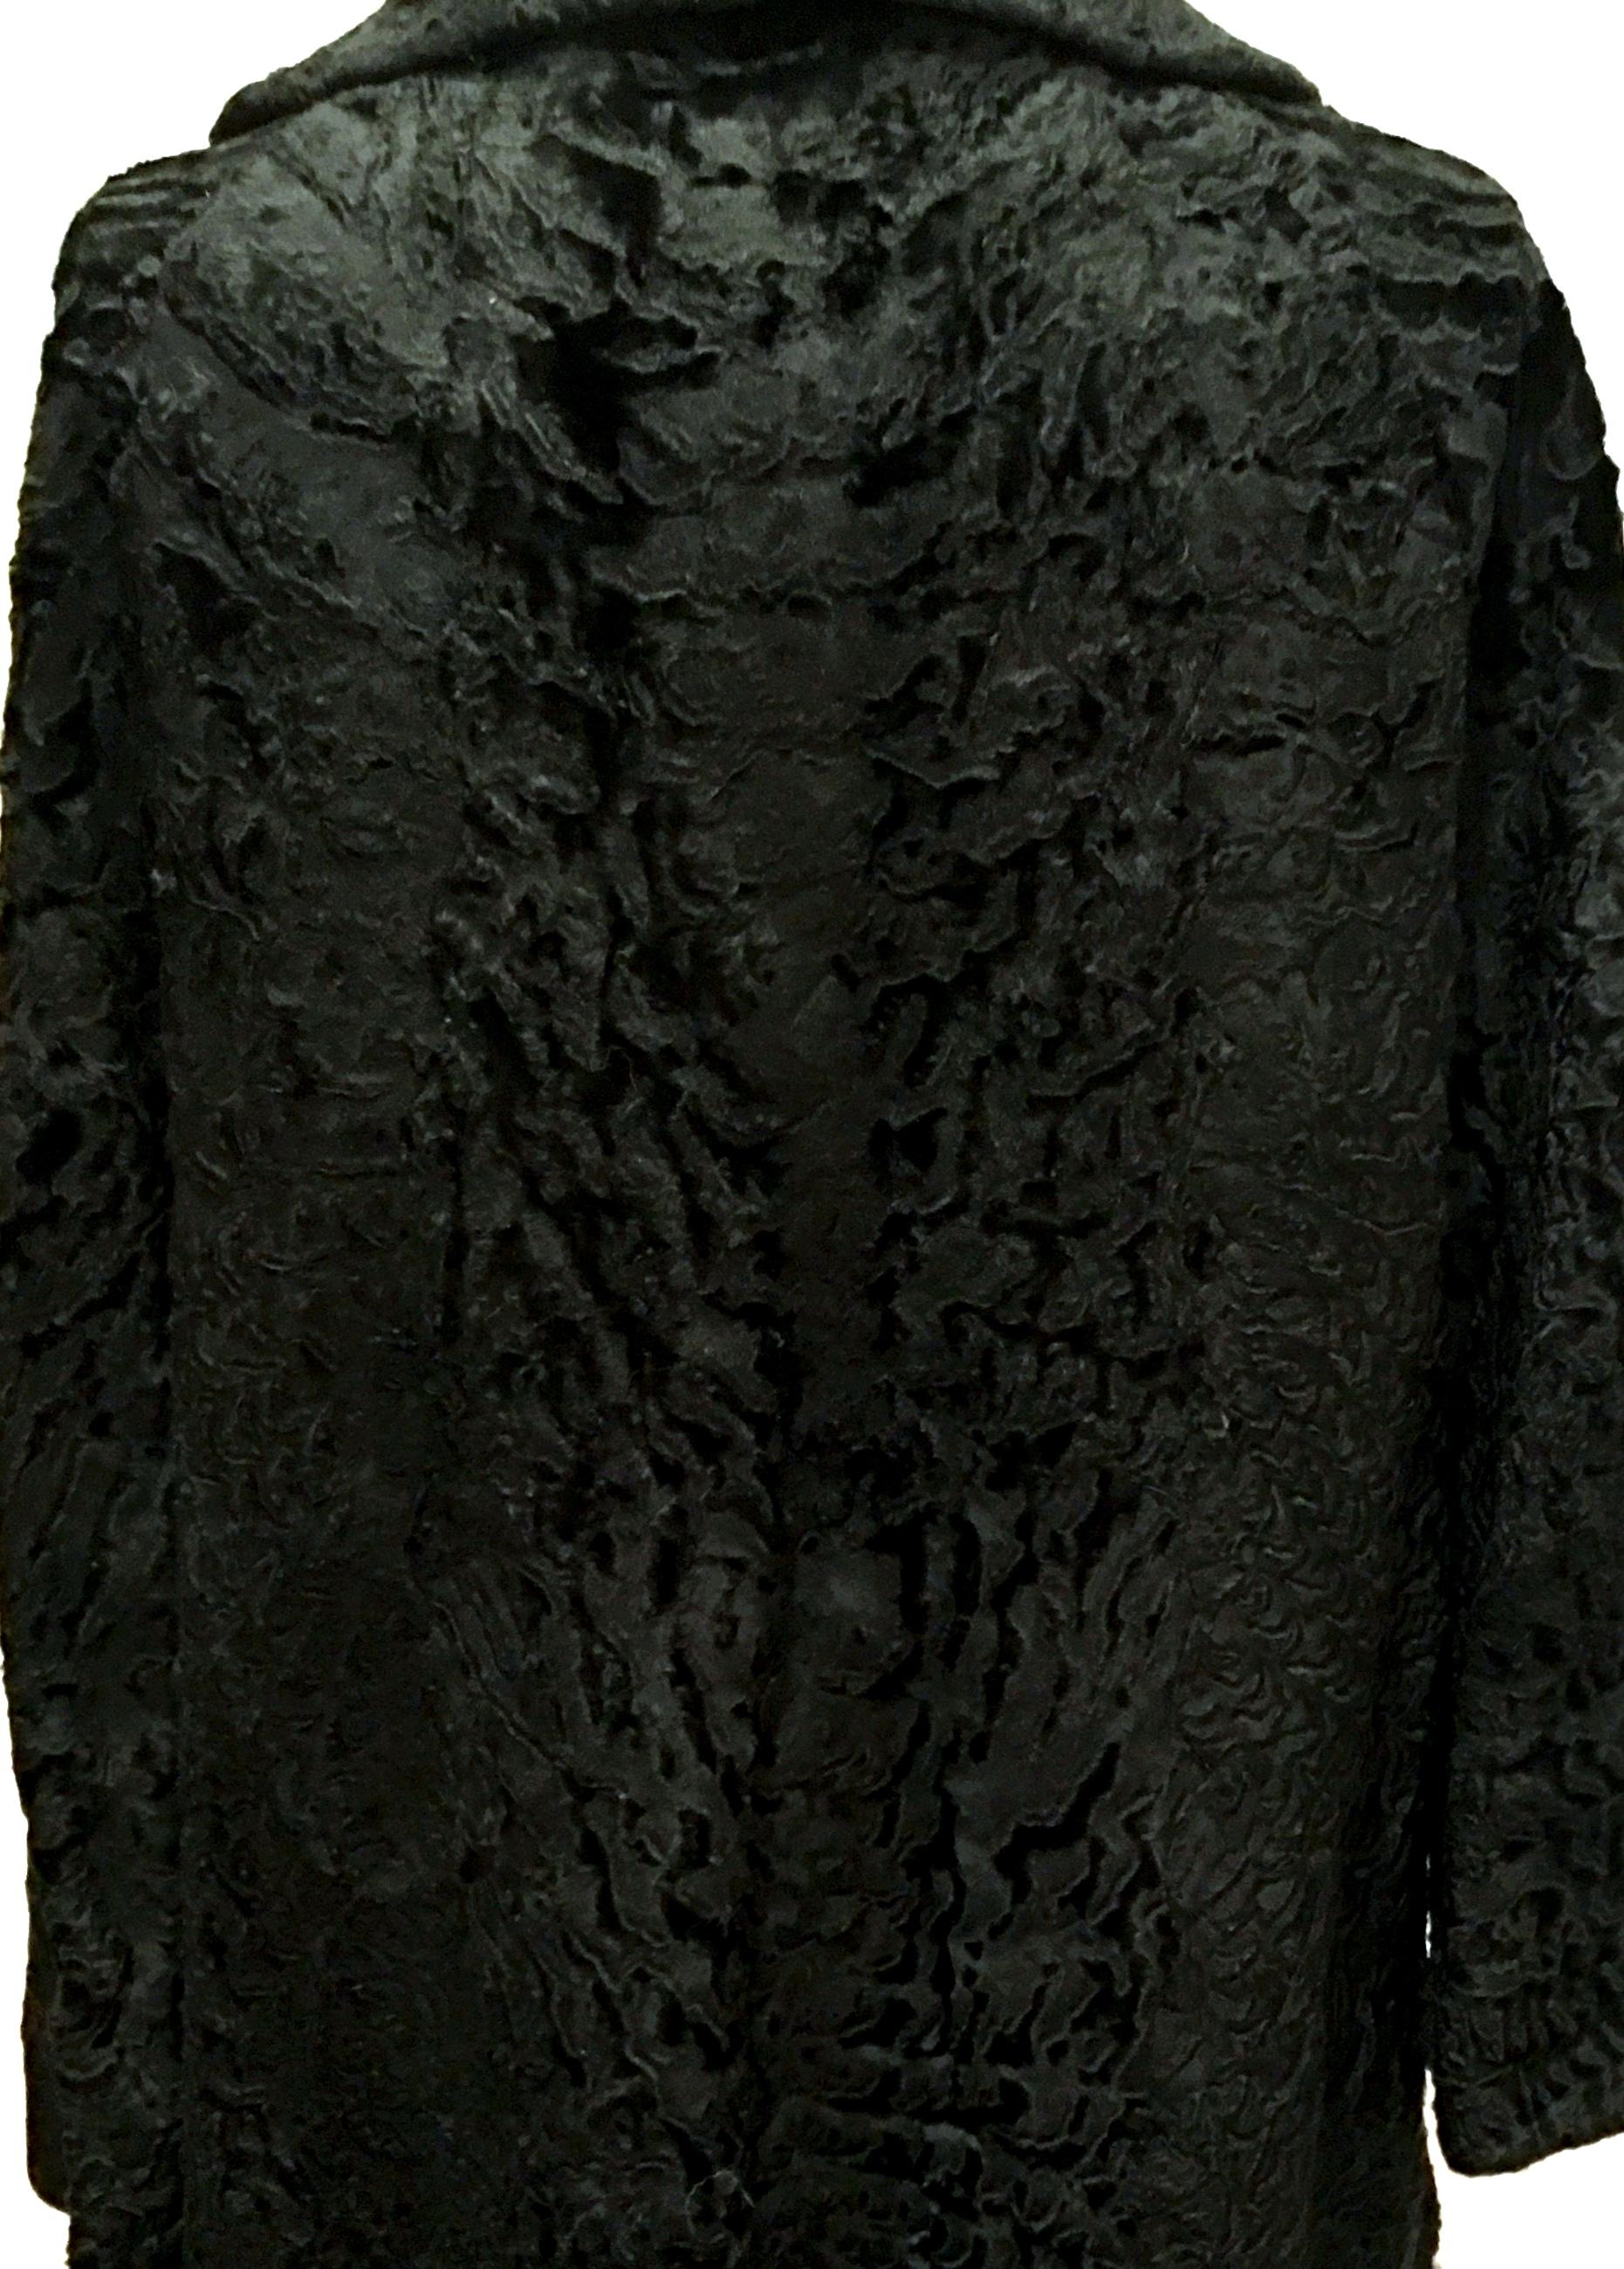 20th Century Sculptural Persian Jet Black Lamb Fur Swing Car Coat For Sale 3